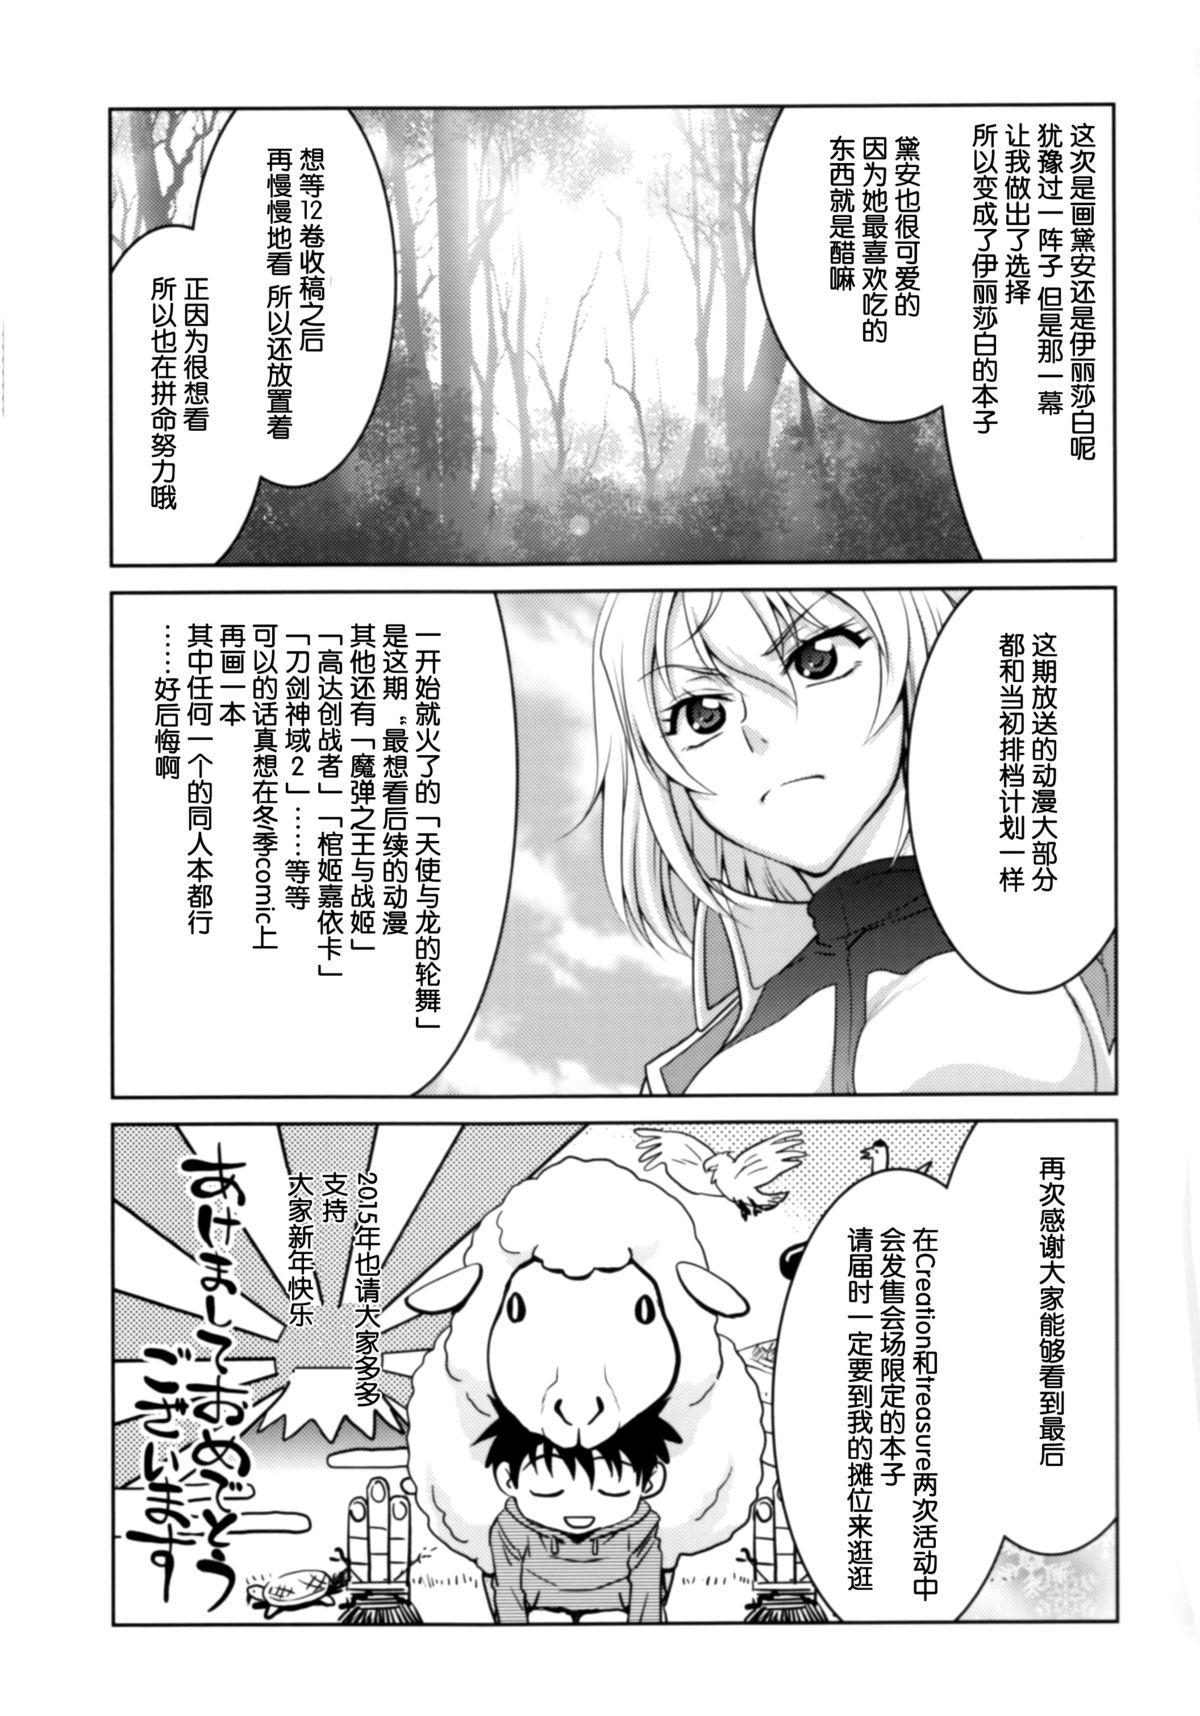 Lesbos Ho... Hontou desu ka? - Nanatsu no taizai Enema - Page 31